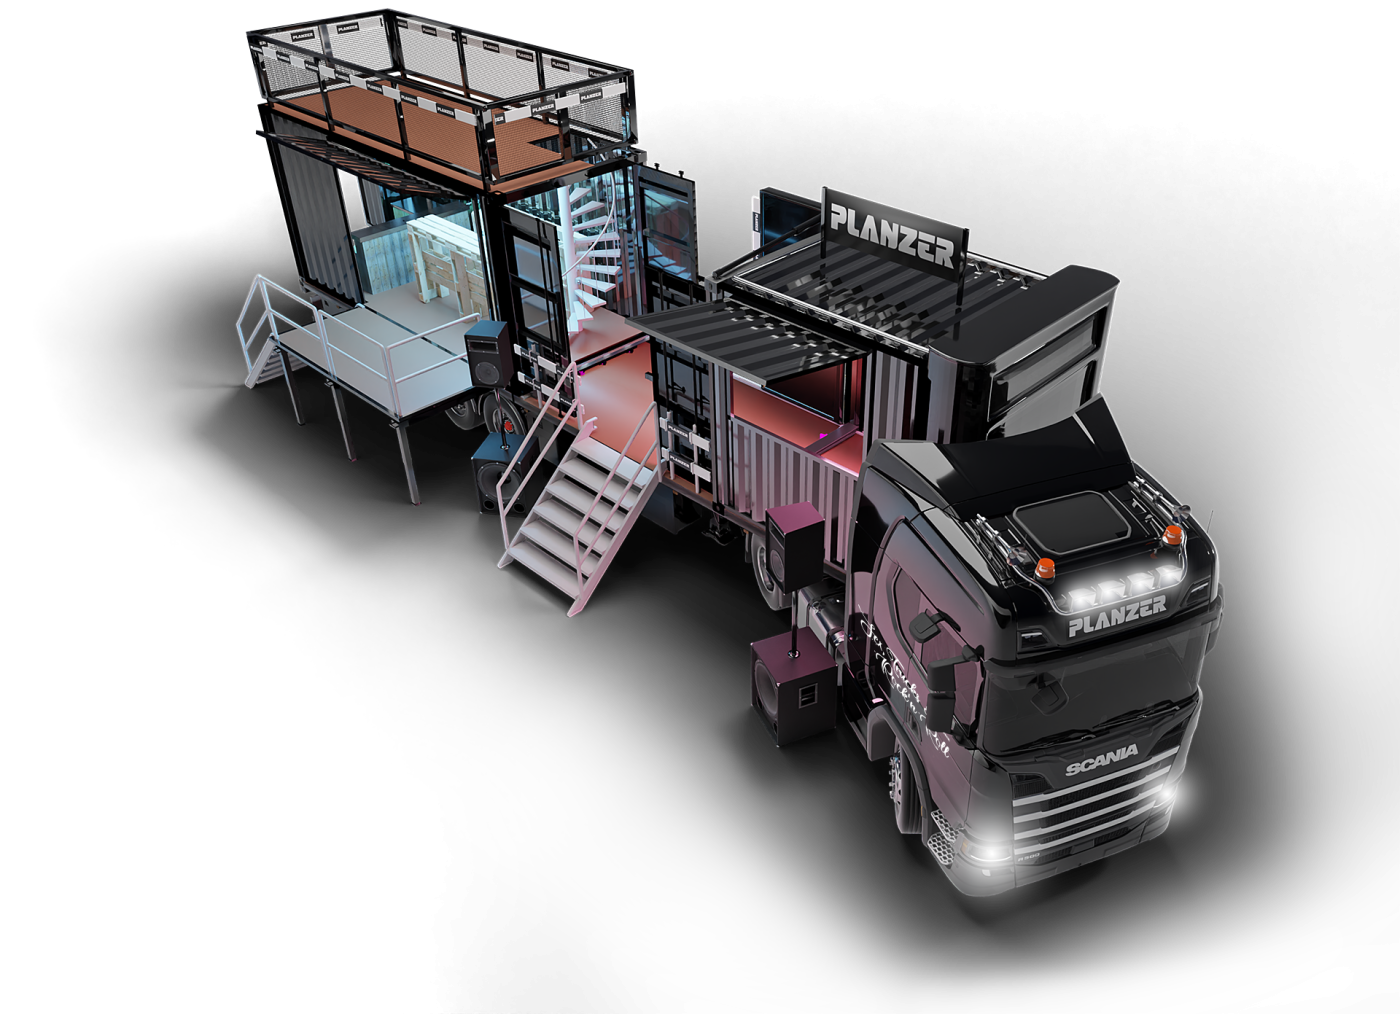 Planzer Event-Truck mit aufgebauter Bar und Dachterrasse, ausgestattet für mobile Veranstaltungen und Roadshow Marketing